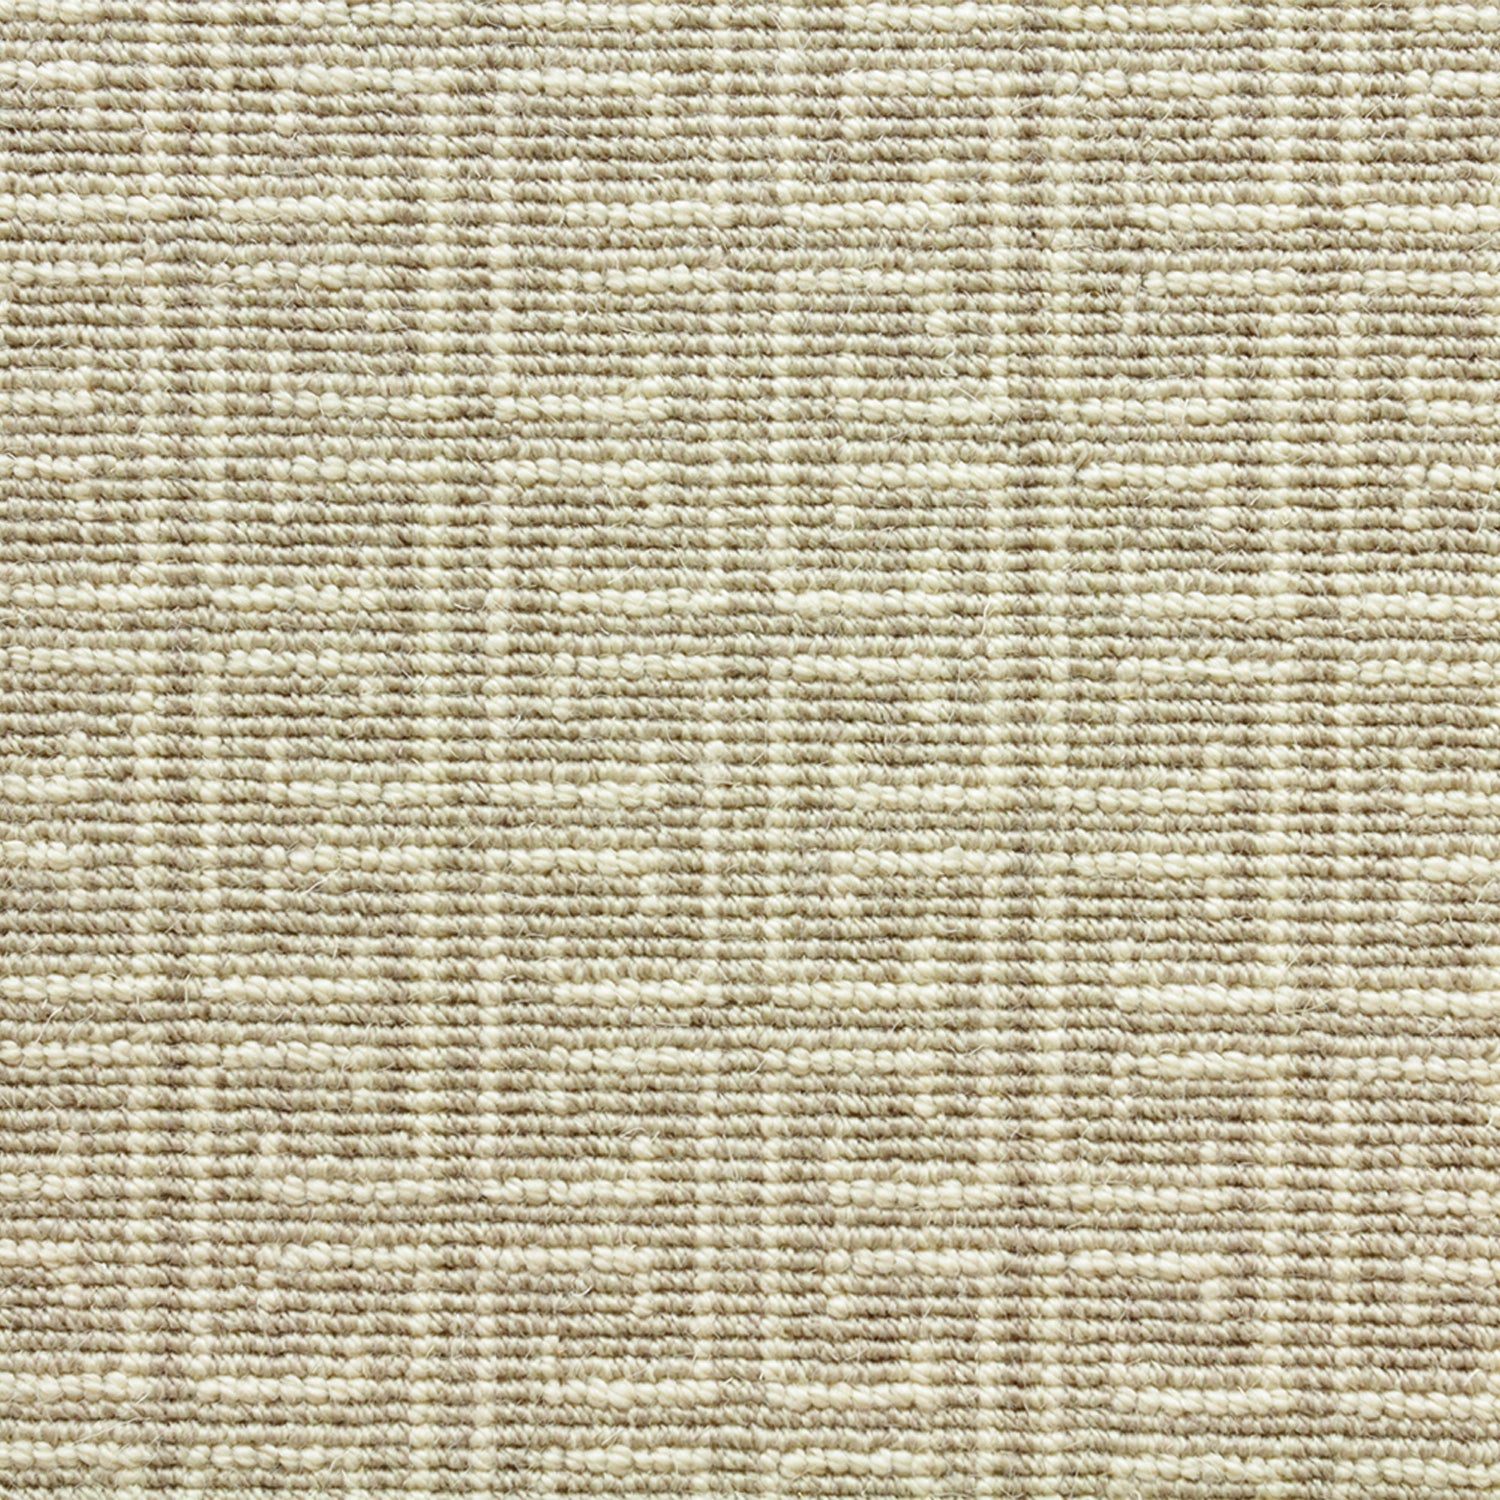 Wool-blend broadloom carpet swatch in an interlocking linear print in cream on a tan field.